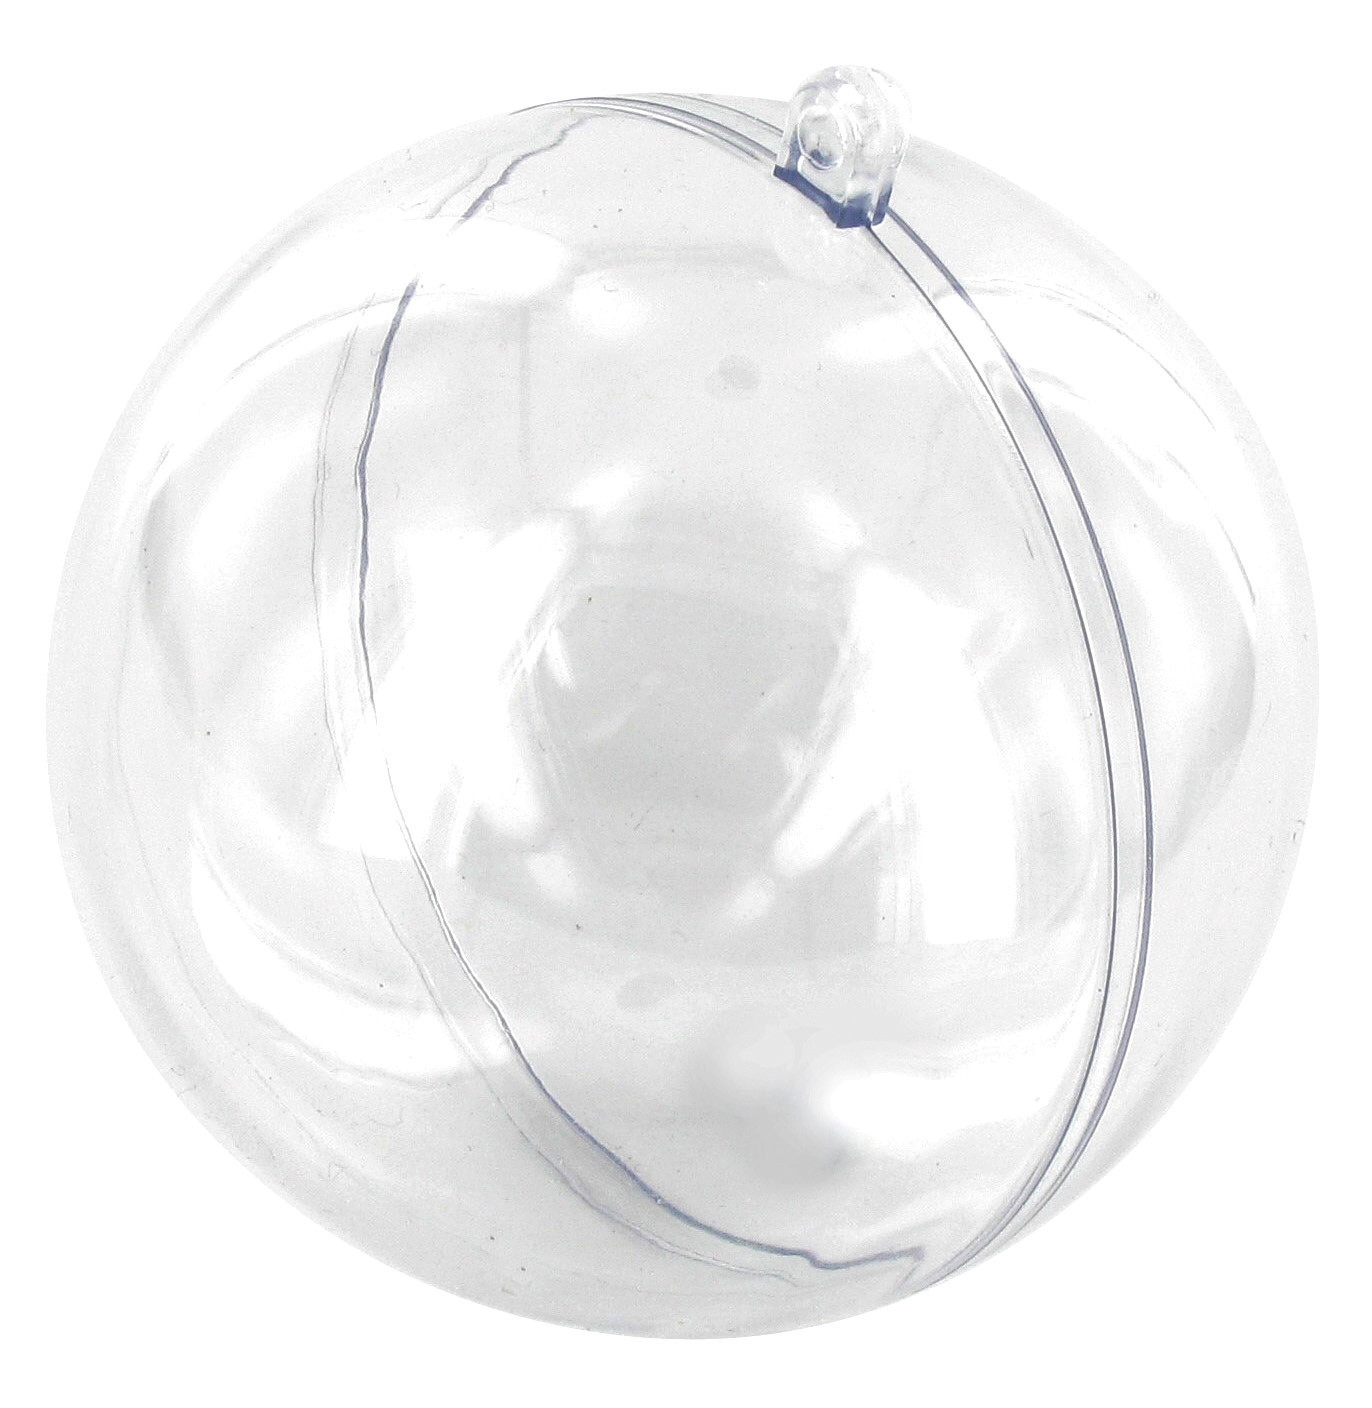 Boule polystyrène Ø 12 cm ( l'unité )